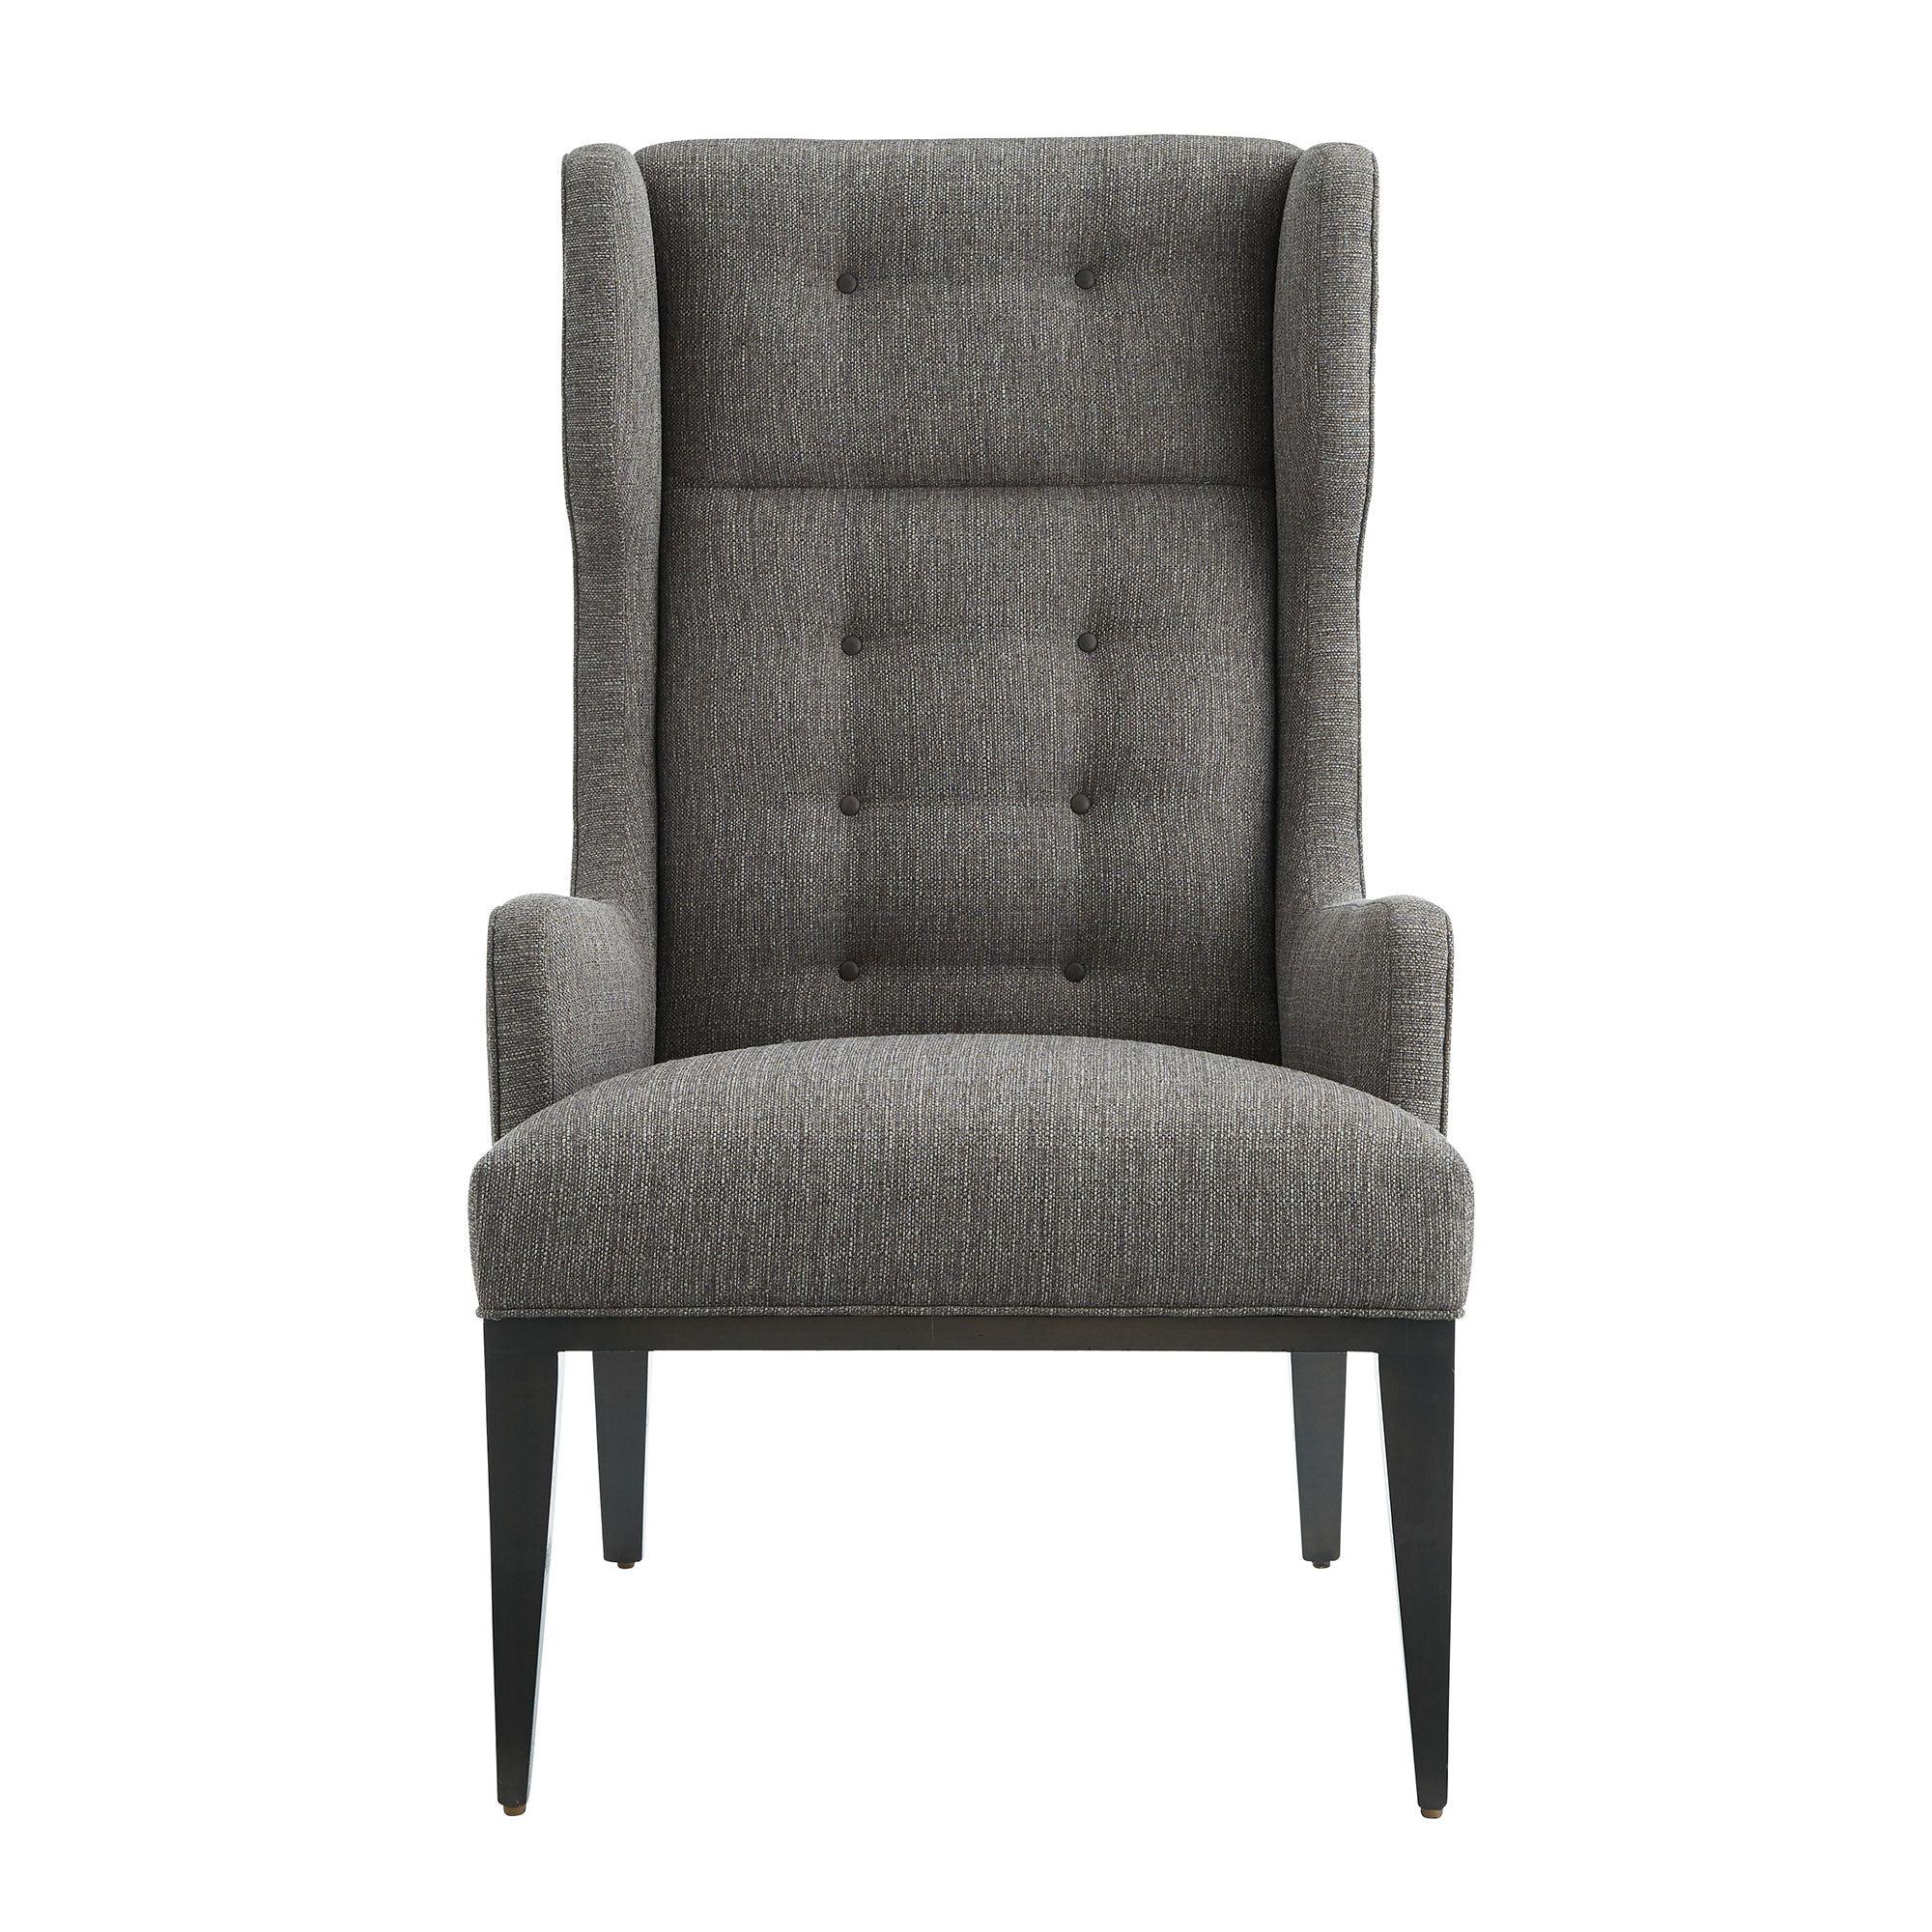 Купить Кресло Idol Wing Chair Soot Textured Tweed Grey Ash в интернет-магазине roooms.ru